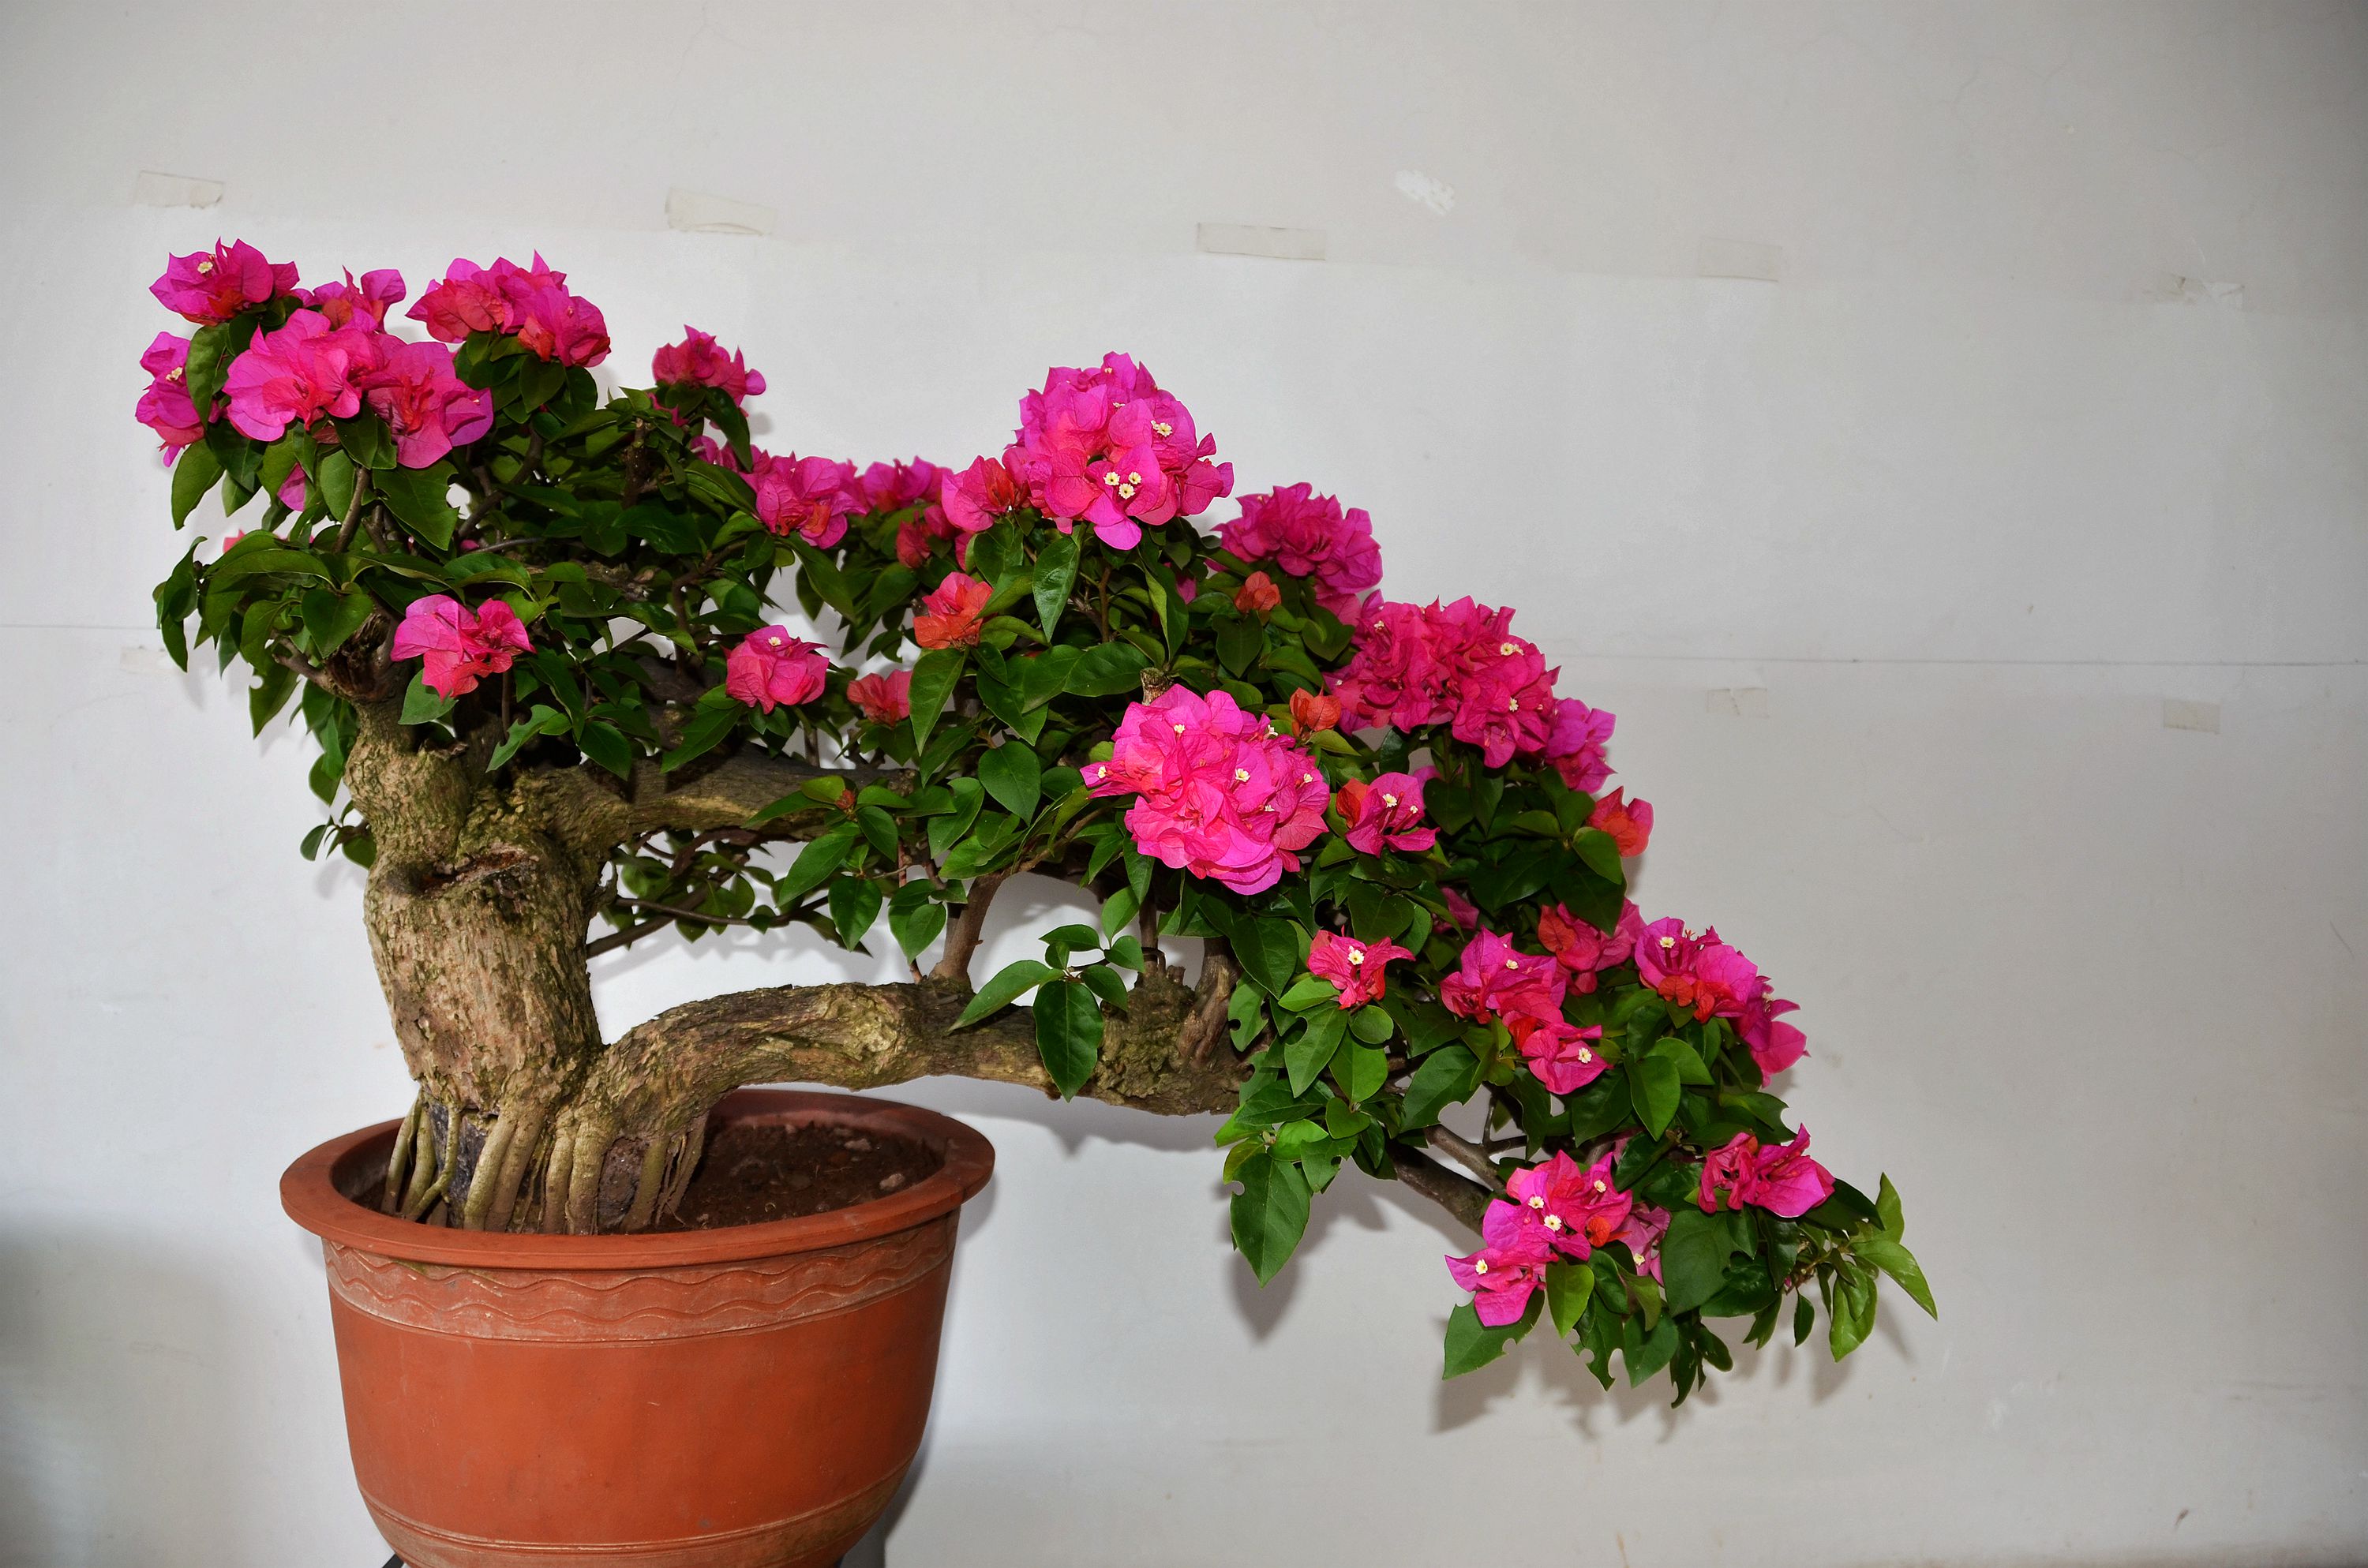 【半边玫瑰】盆景仿真植物千层花盆栽家居装饰假花艺创意礼品摆件-阿里巴巴